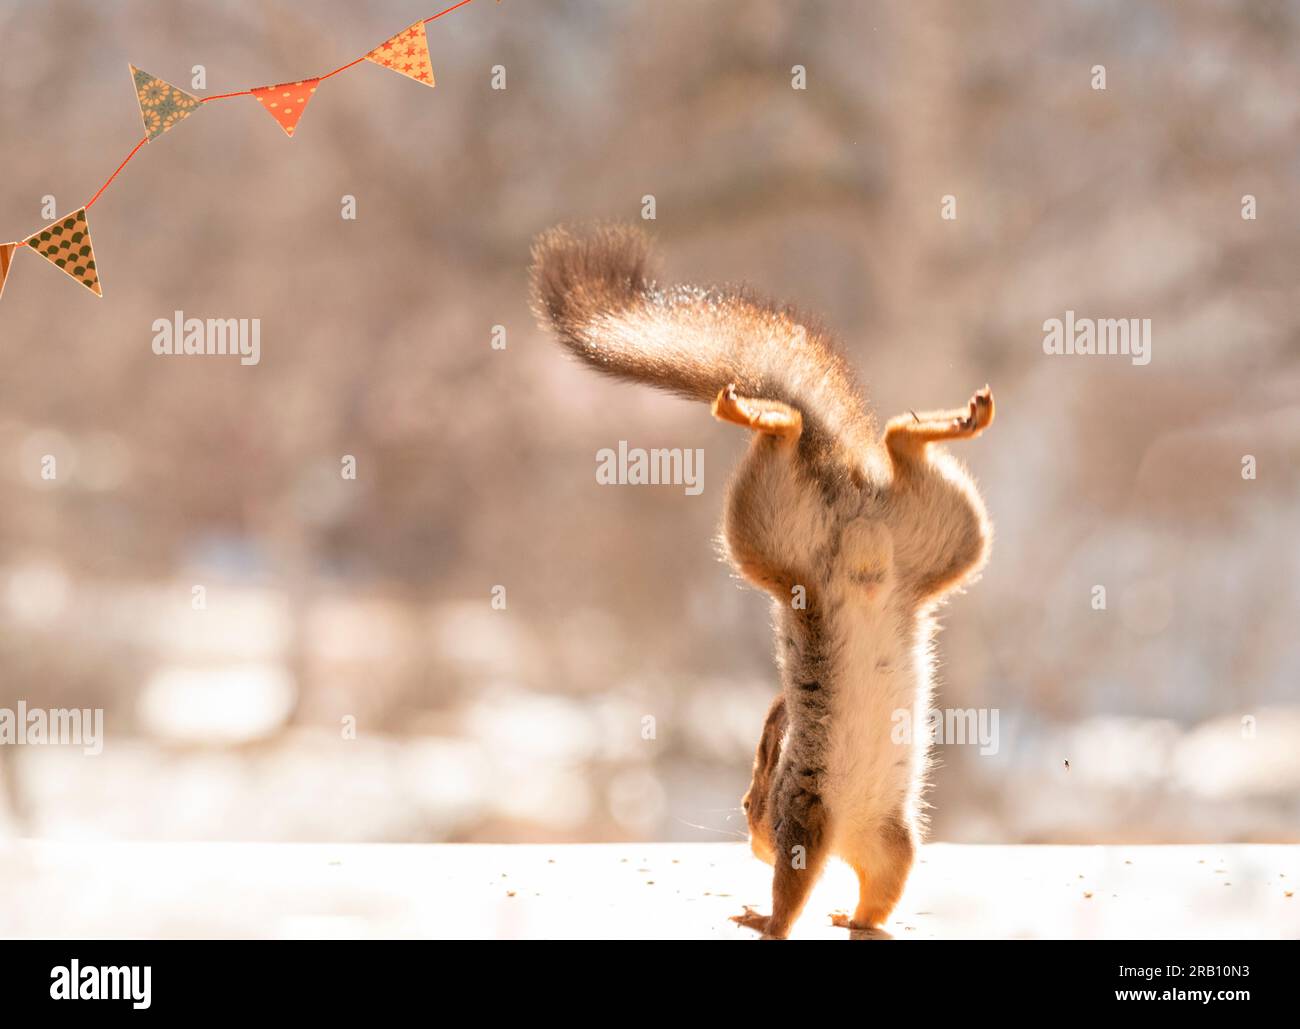 Lo scoiattolo rosso sta atterrando a testa in giù sui suoi piedi Foto Stock